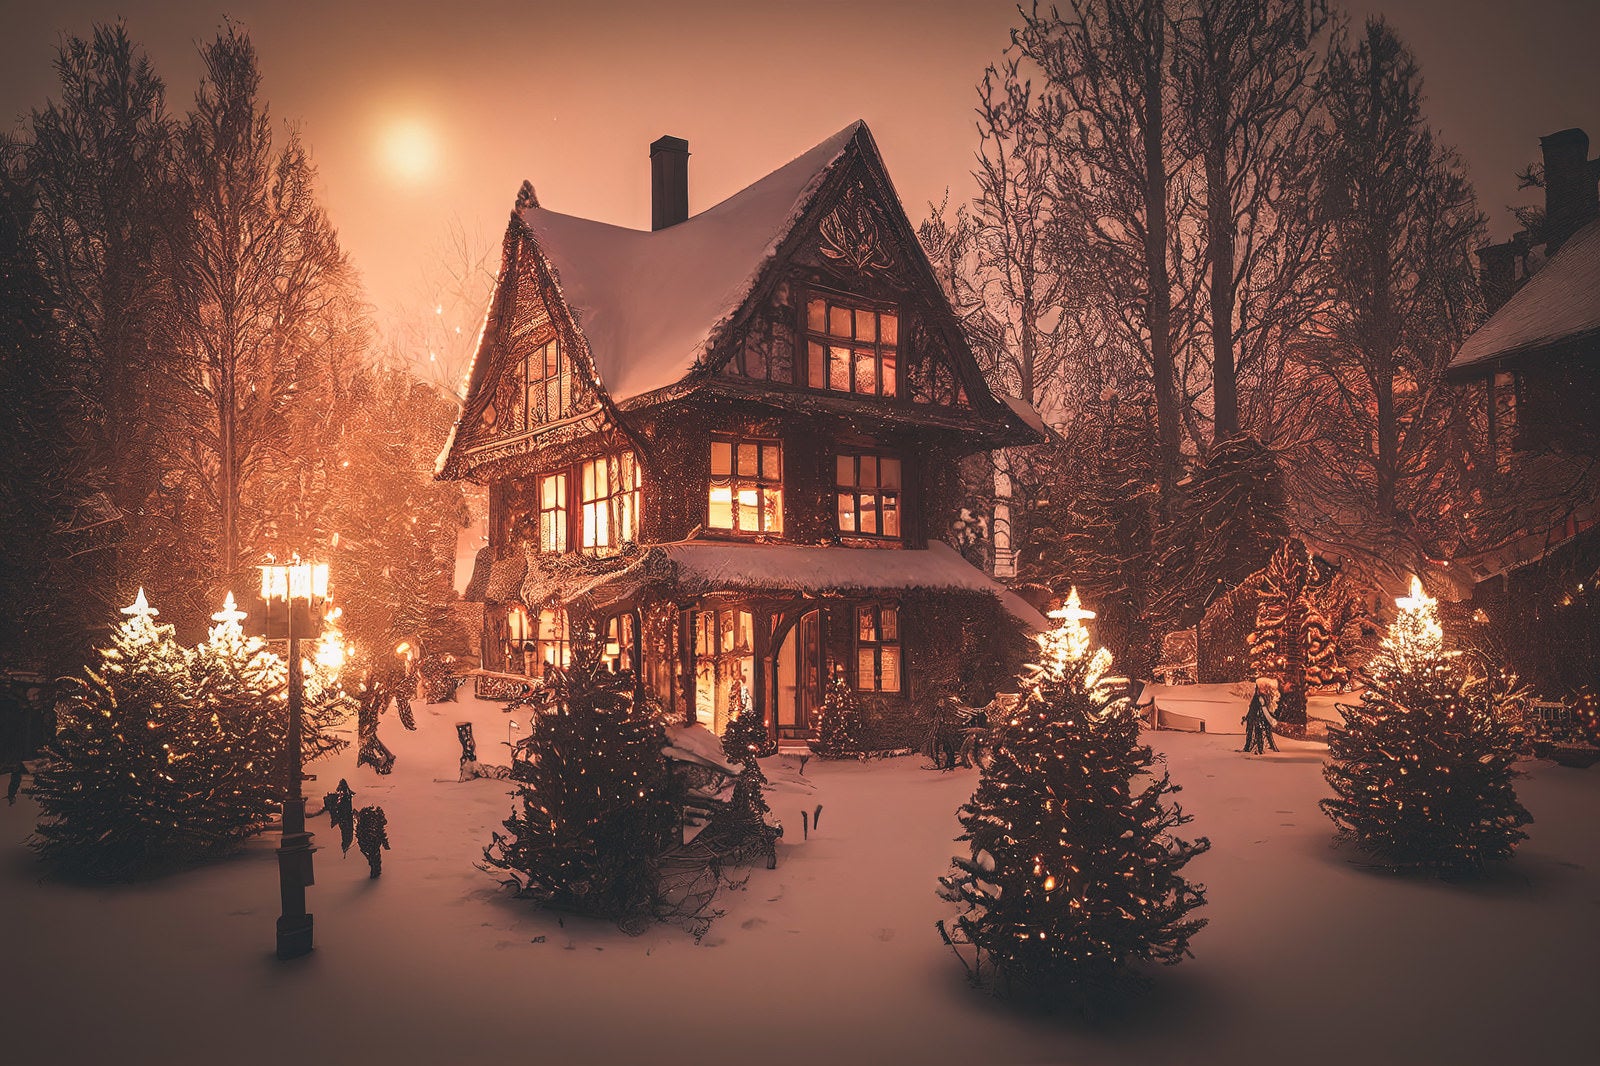 「積雪と洋館の明かり」の写真